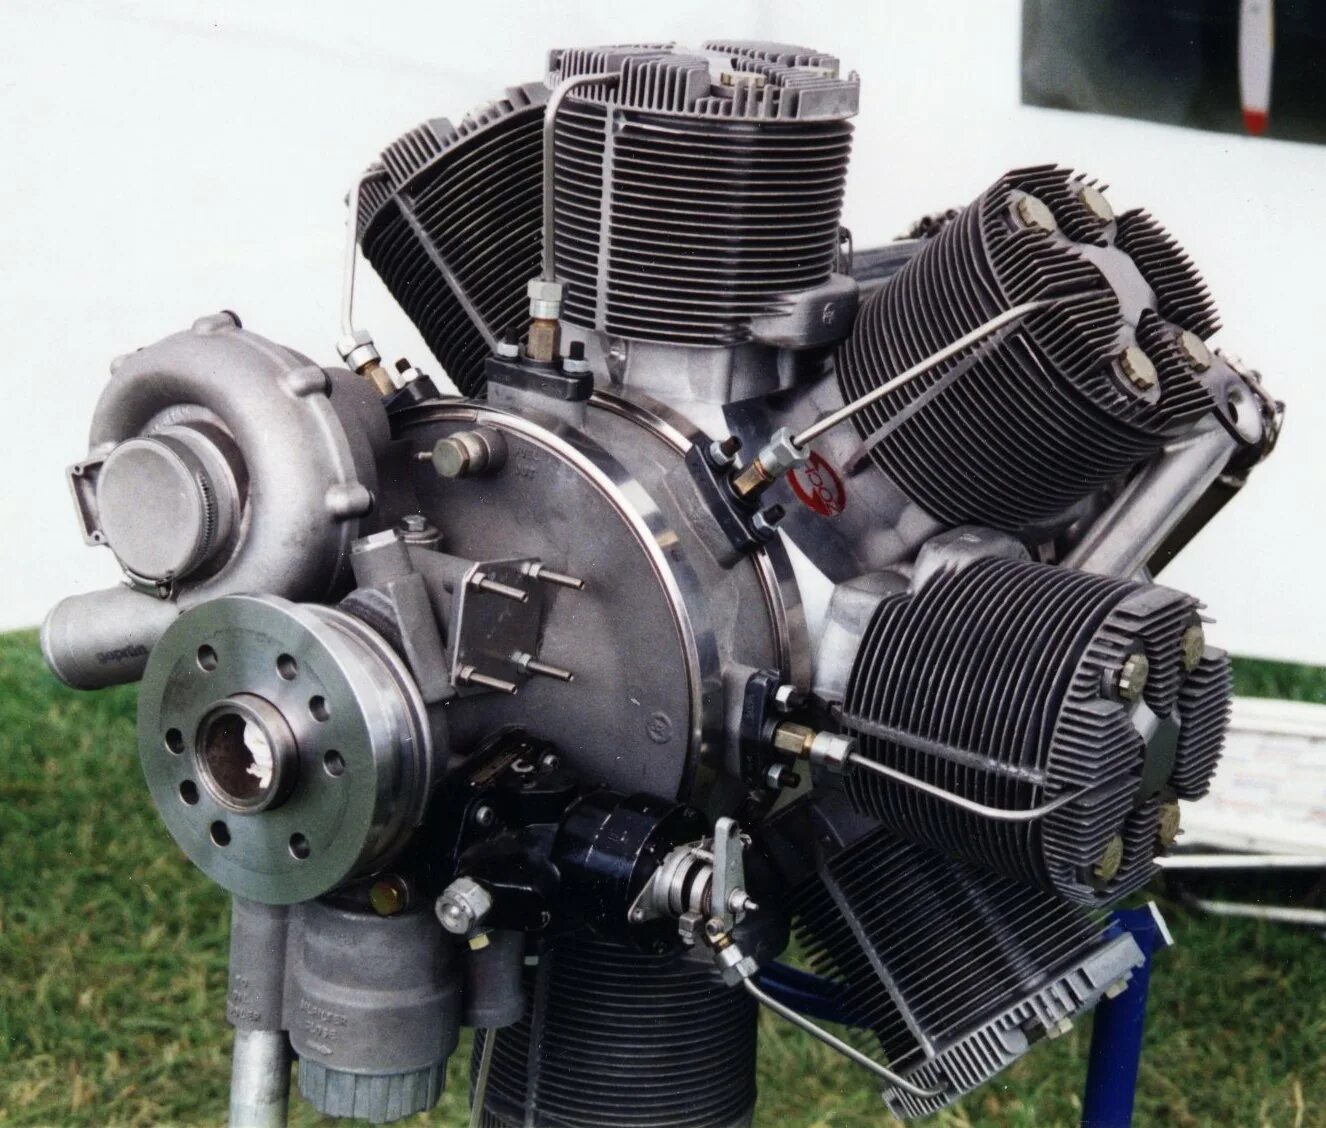 Купить дизельный двигатель москва. Двухтактный авиадизель м-305. Pratt & Whitney r5600 XBSAP. 56 Цилиндровый. DELTAHAWK Diesel aircraft engines. 28-Цилиндровый двигатель Pratt Whitney aircraft engine.